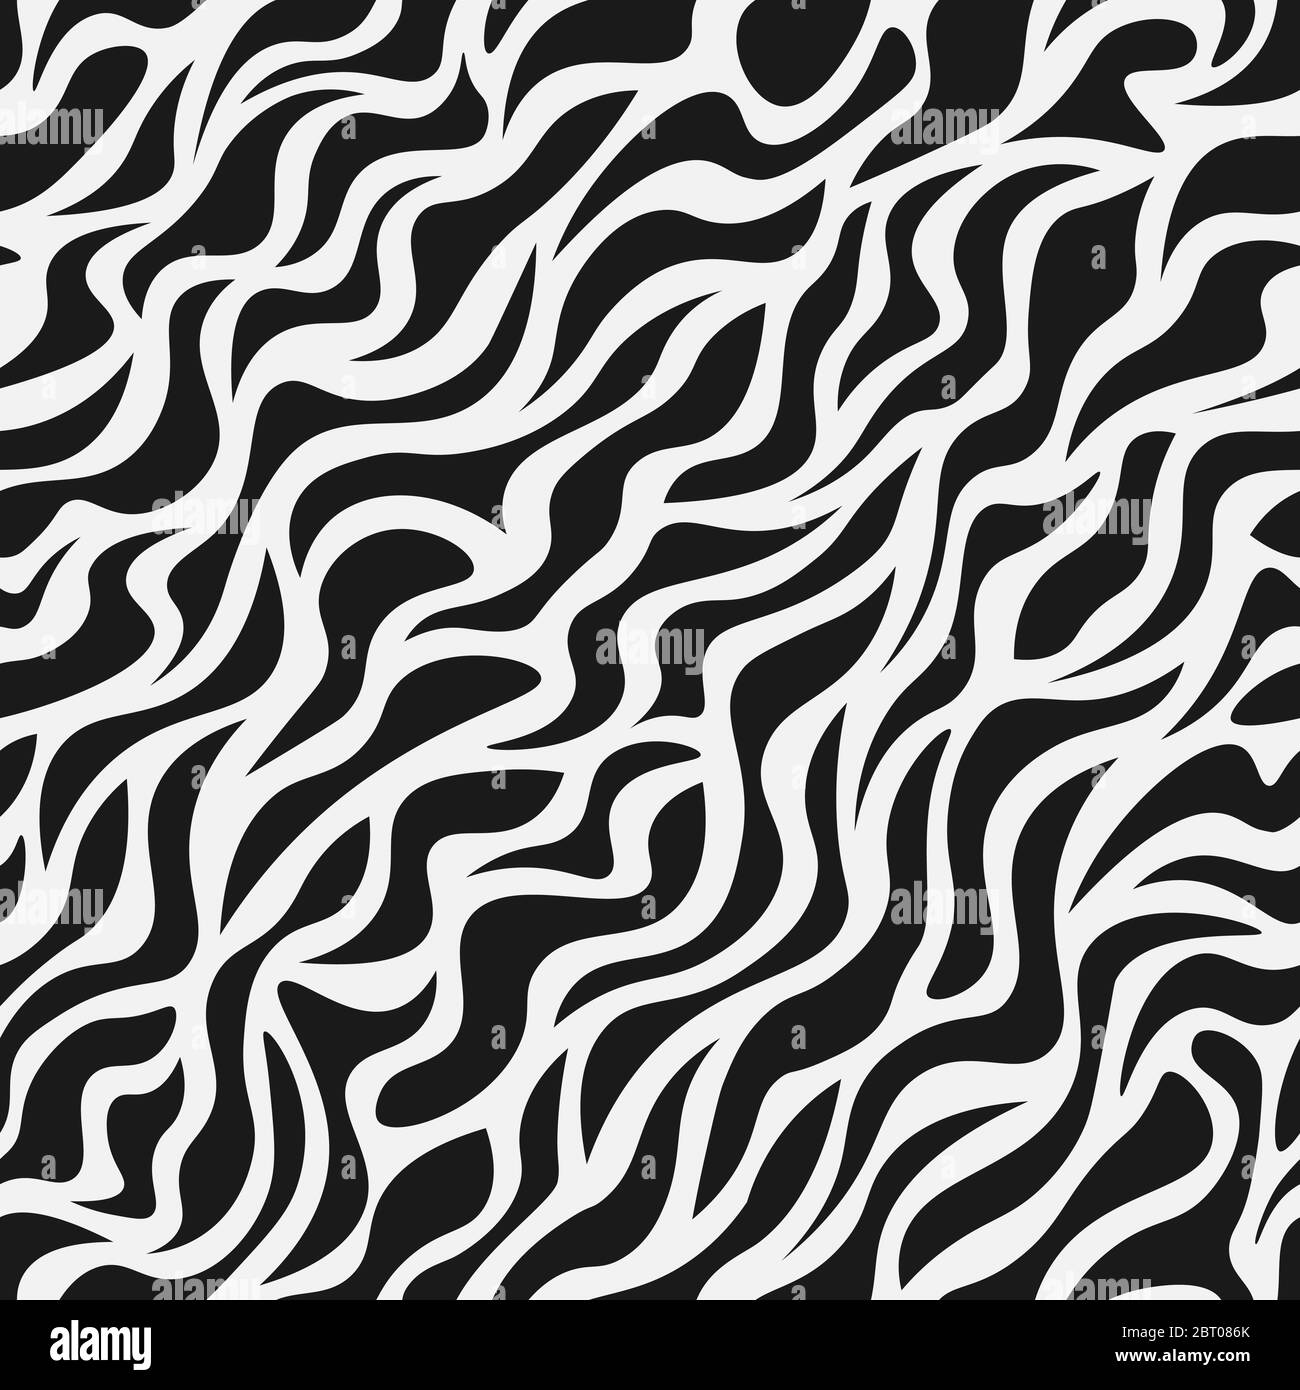 How to Draw Zebra Print Pattern